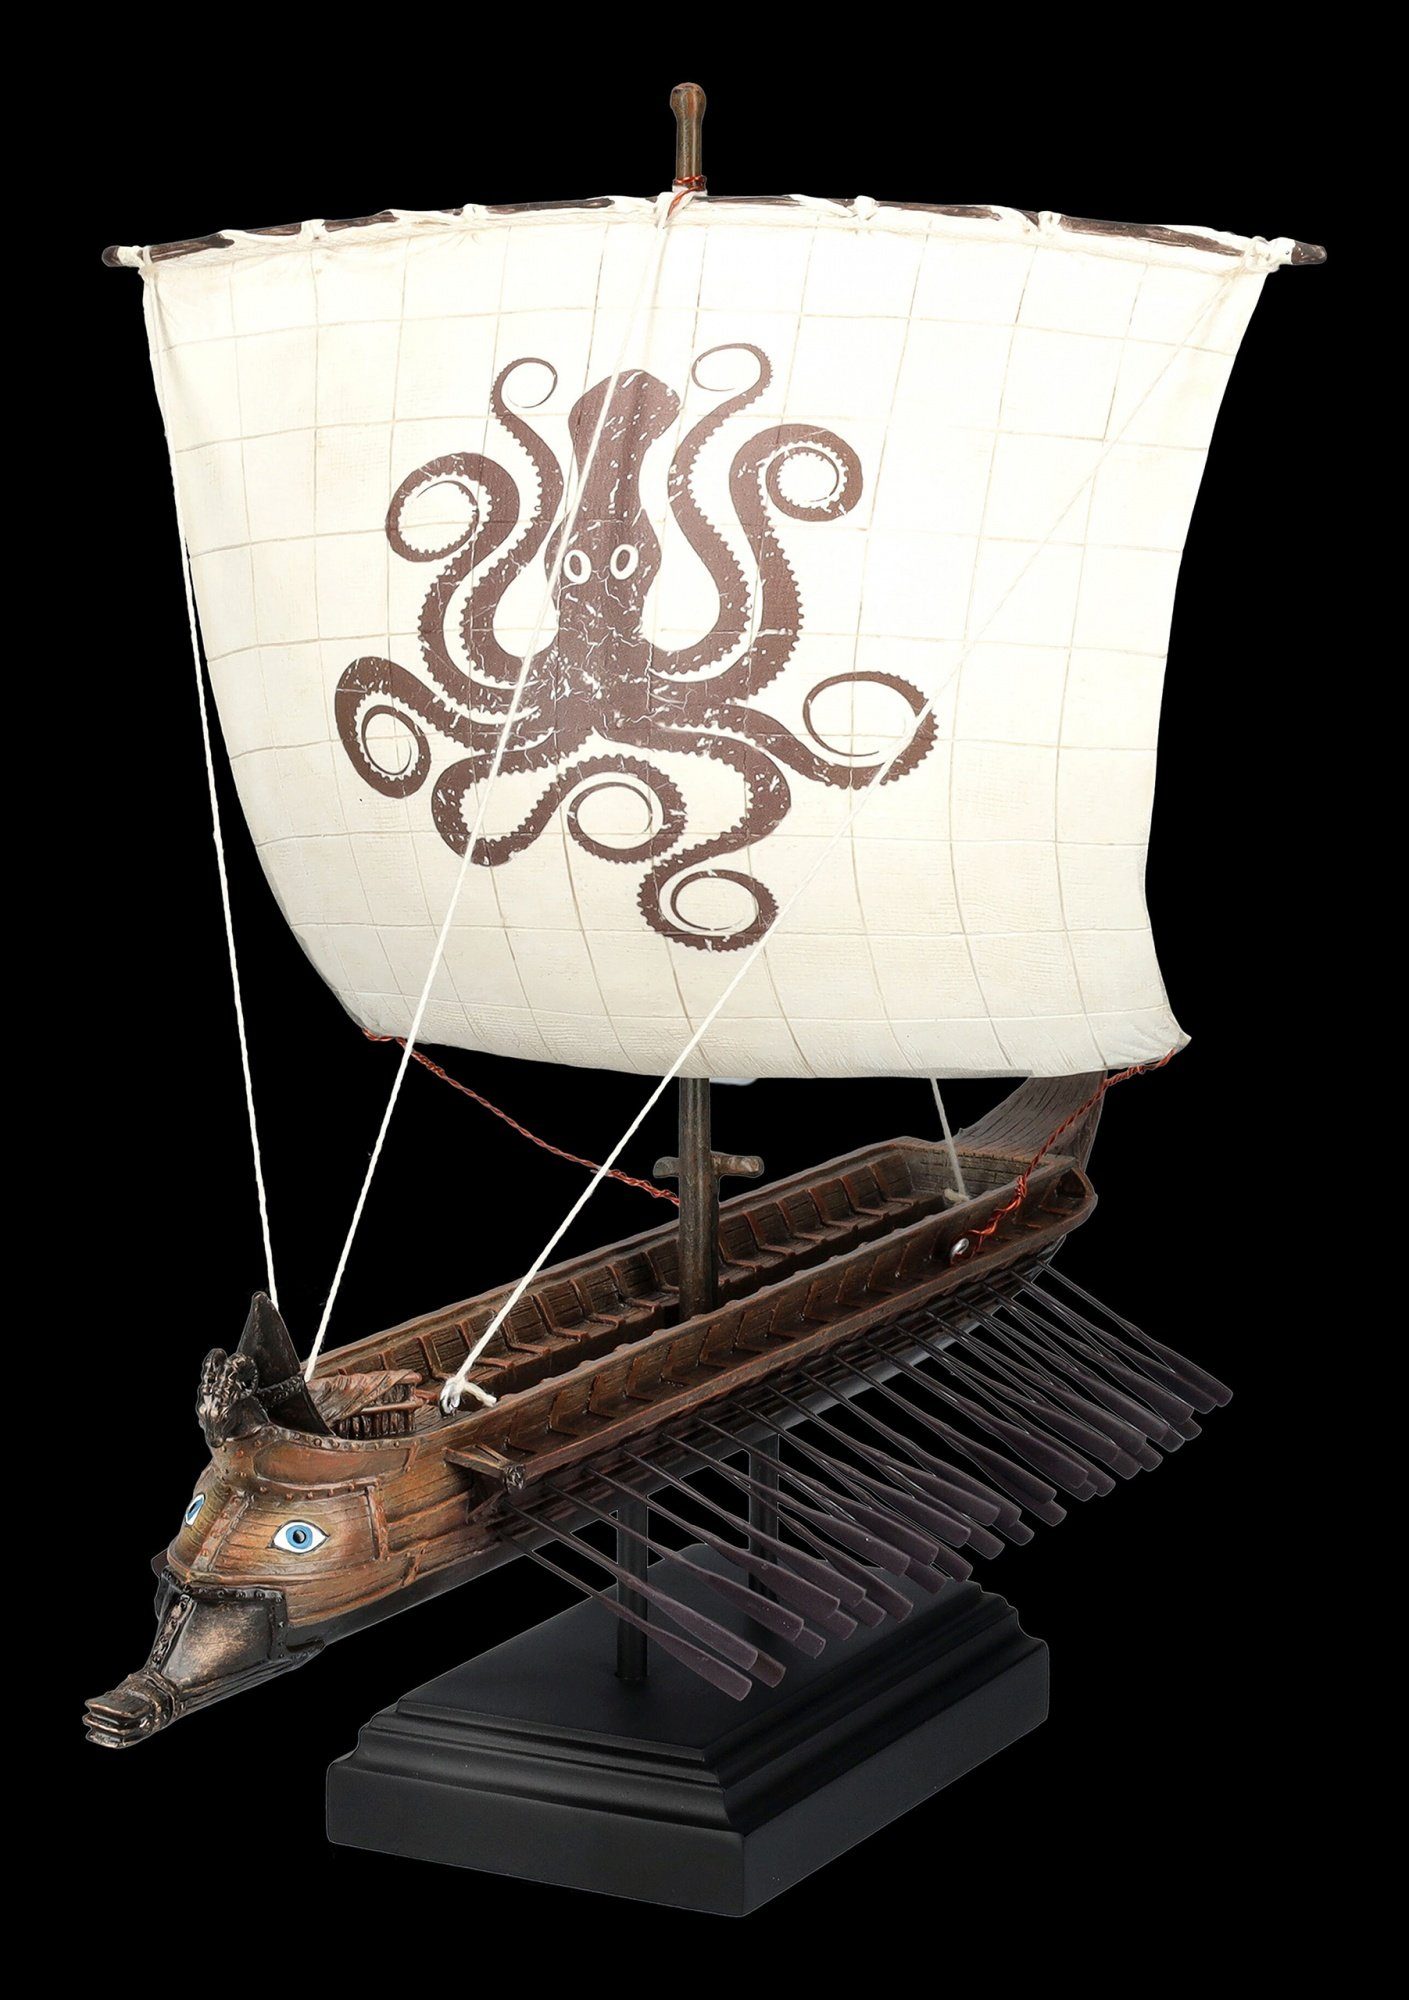 Shop Trireme Schiff Mythologie GmbH - Dekoobjekt mit Veronese Segel Kraken Griechische Dekoration - Figuren